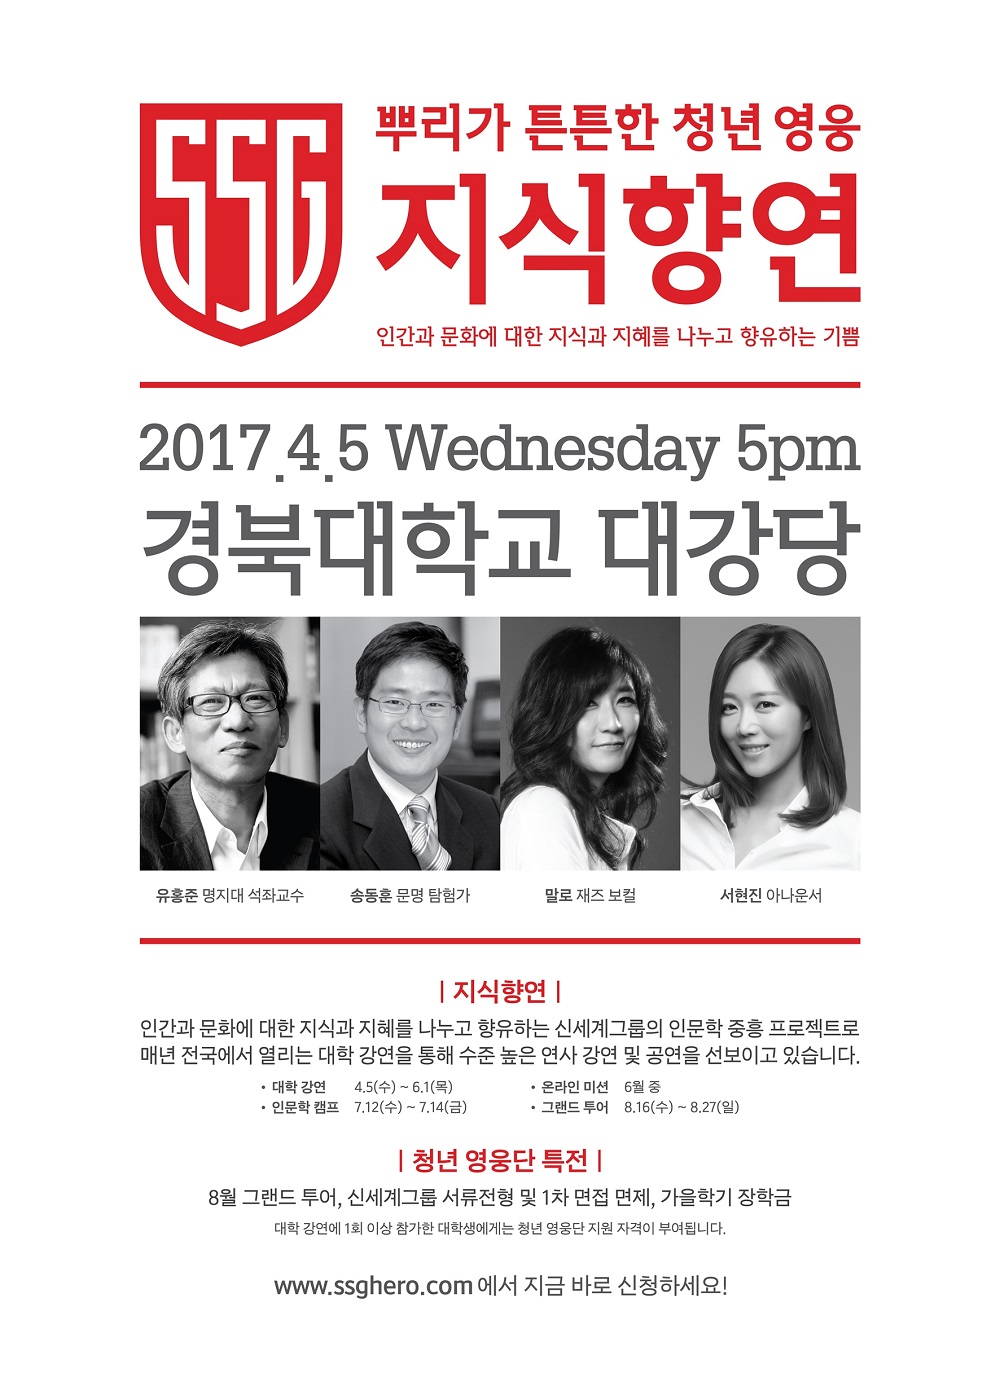 신세계그룹, ‘뉴 프런티어’ 테마로 ‘2017 지식향연’ 개최 